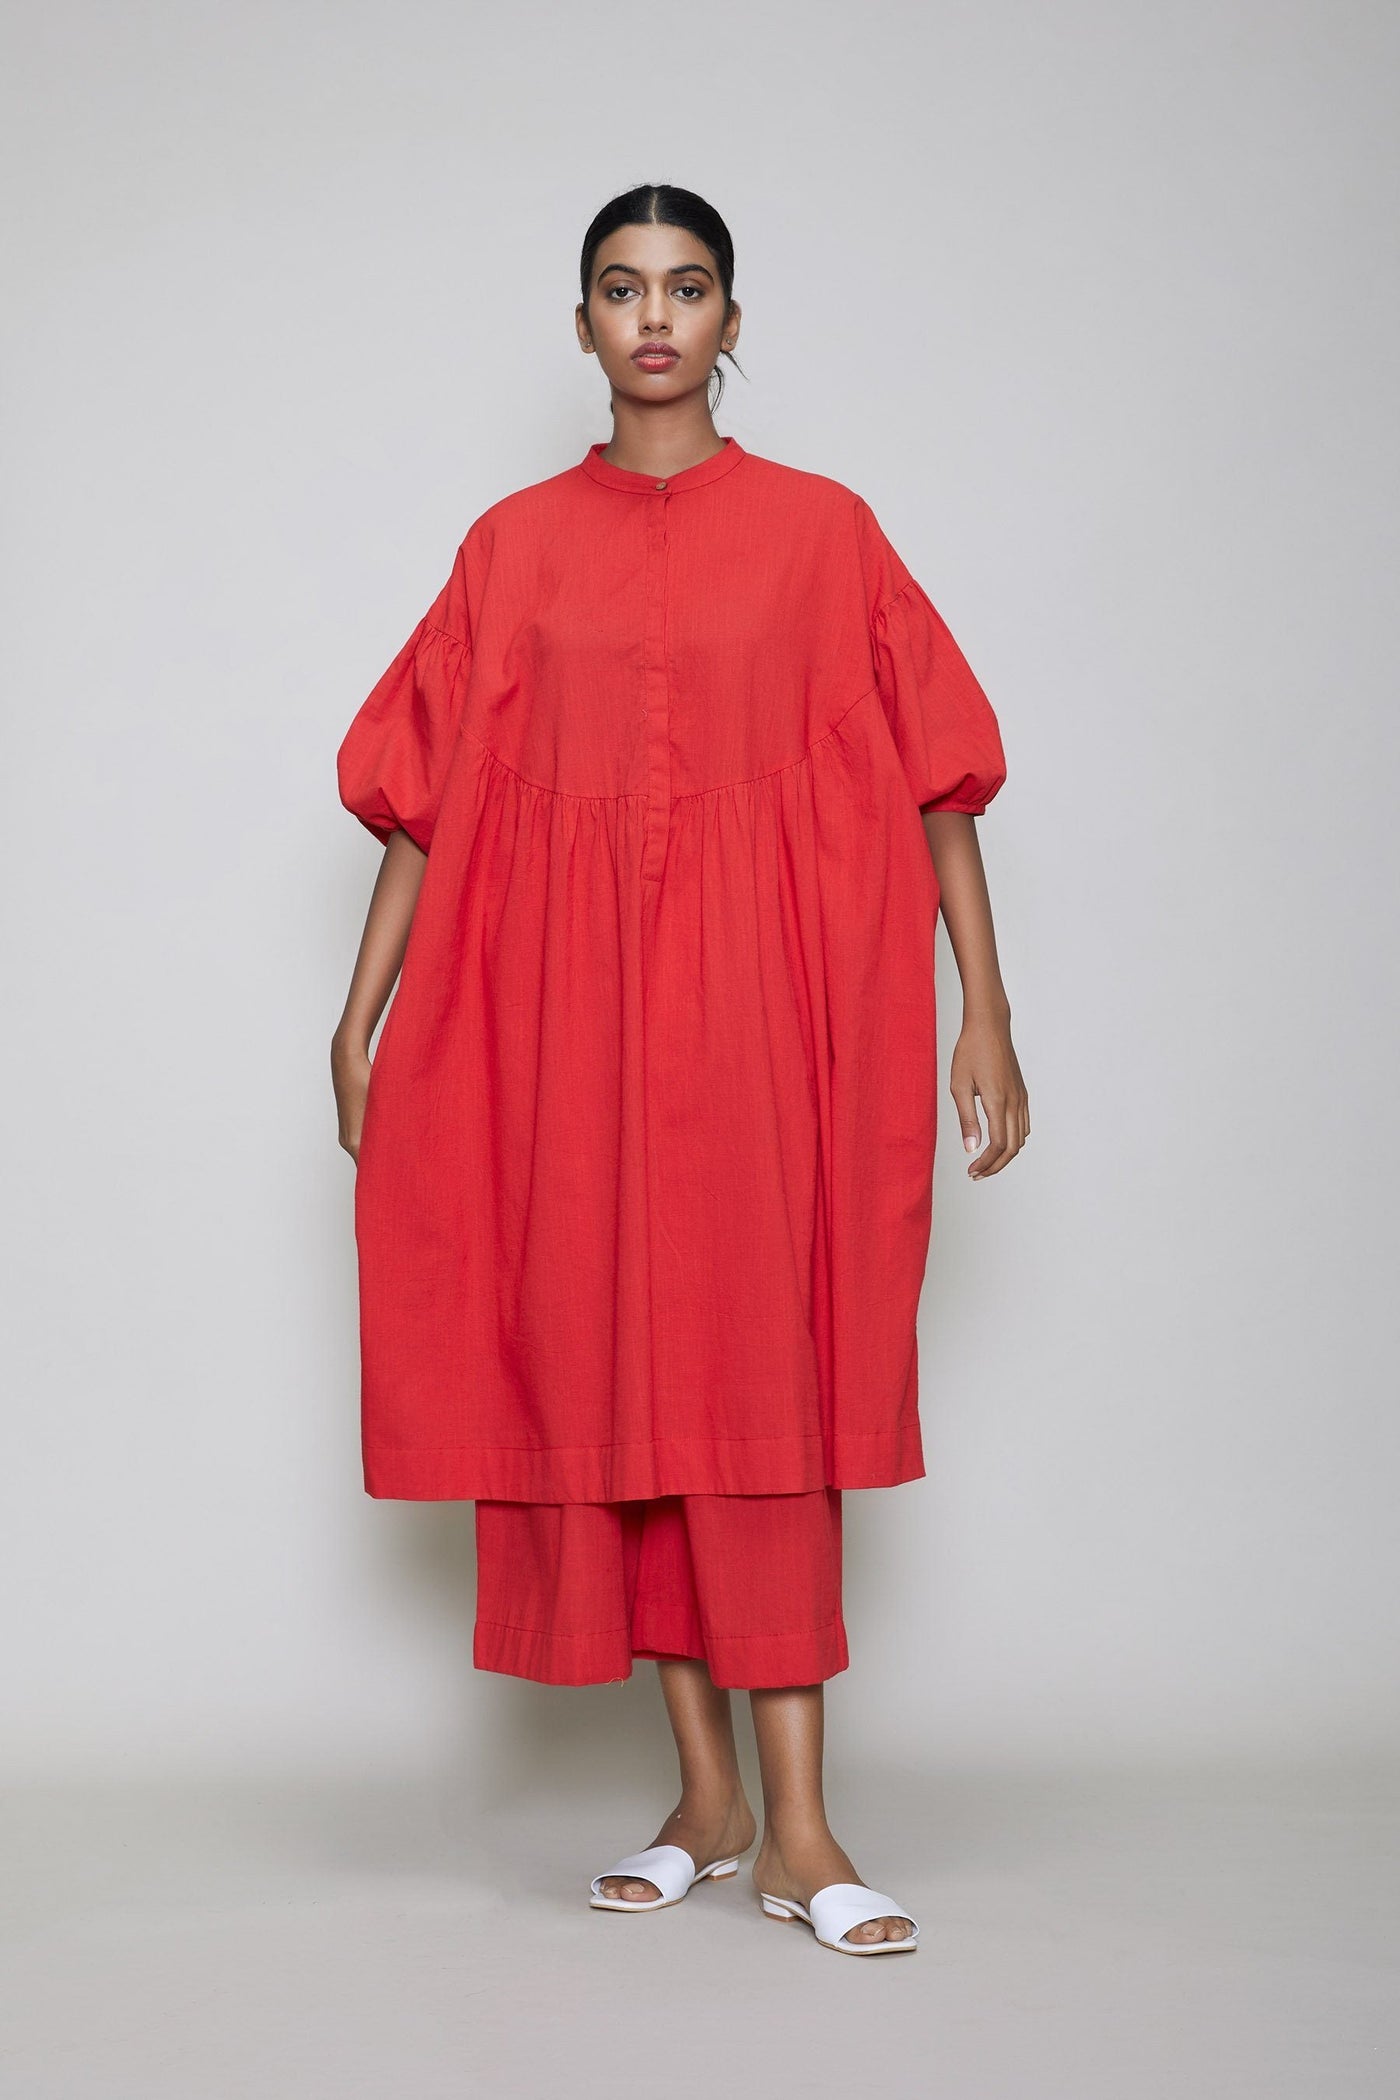 MATI ACRA TUNIC DRESS-RED Fashion Mati